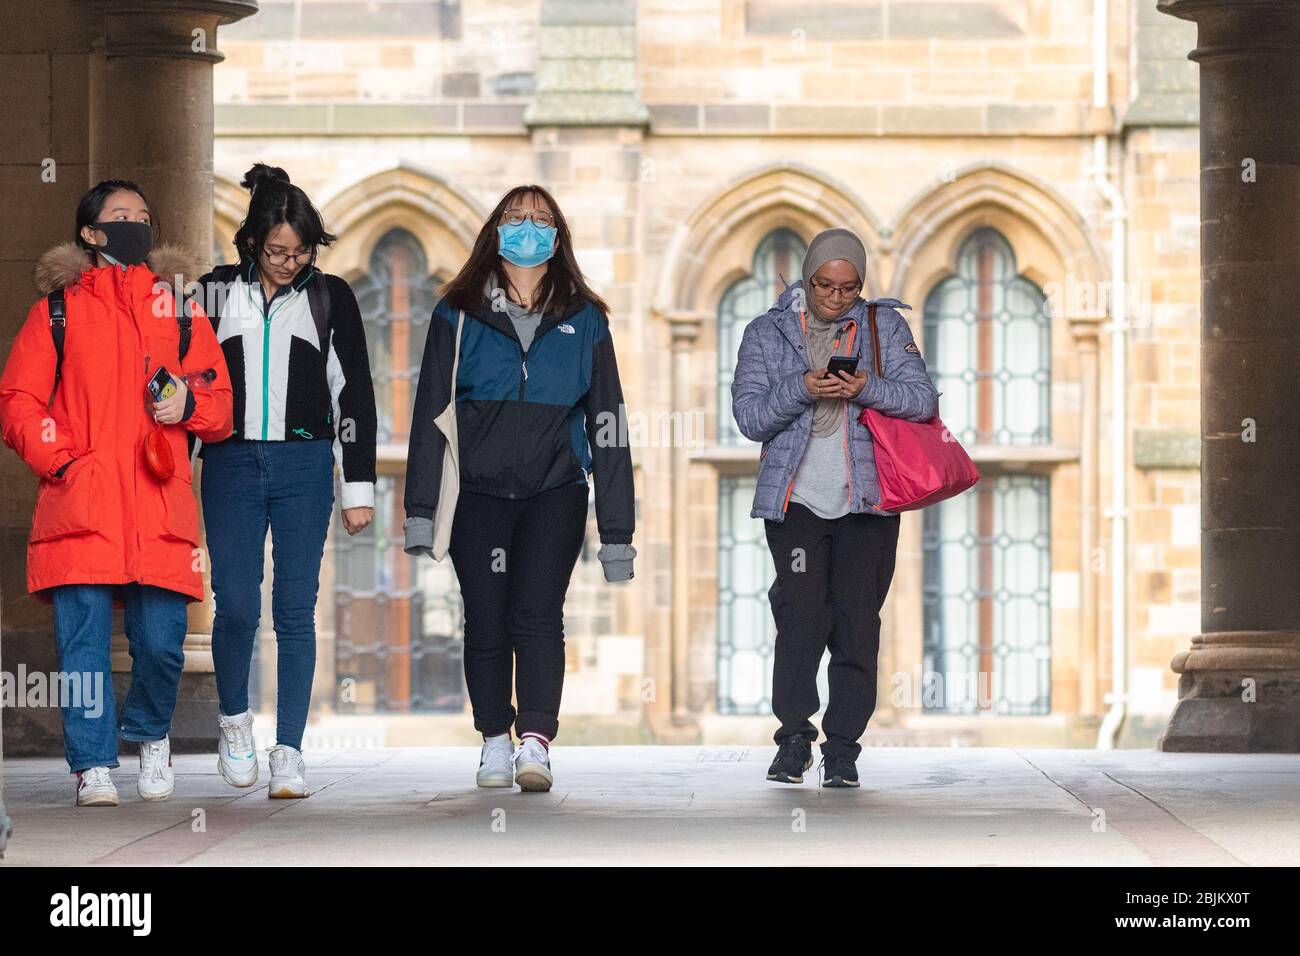 Estudiantes universitarios de Glasgow que usan máscaras faciales durante la pandemia del coronavirus, Escocia, Reino Unido Foto de stock